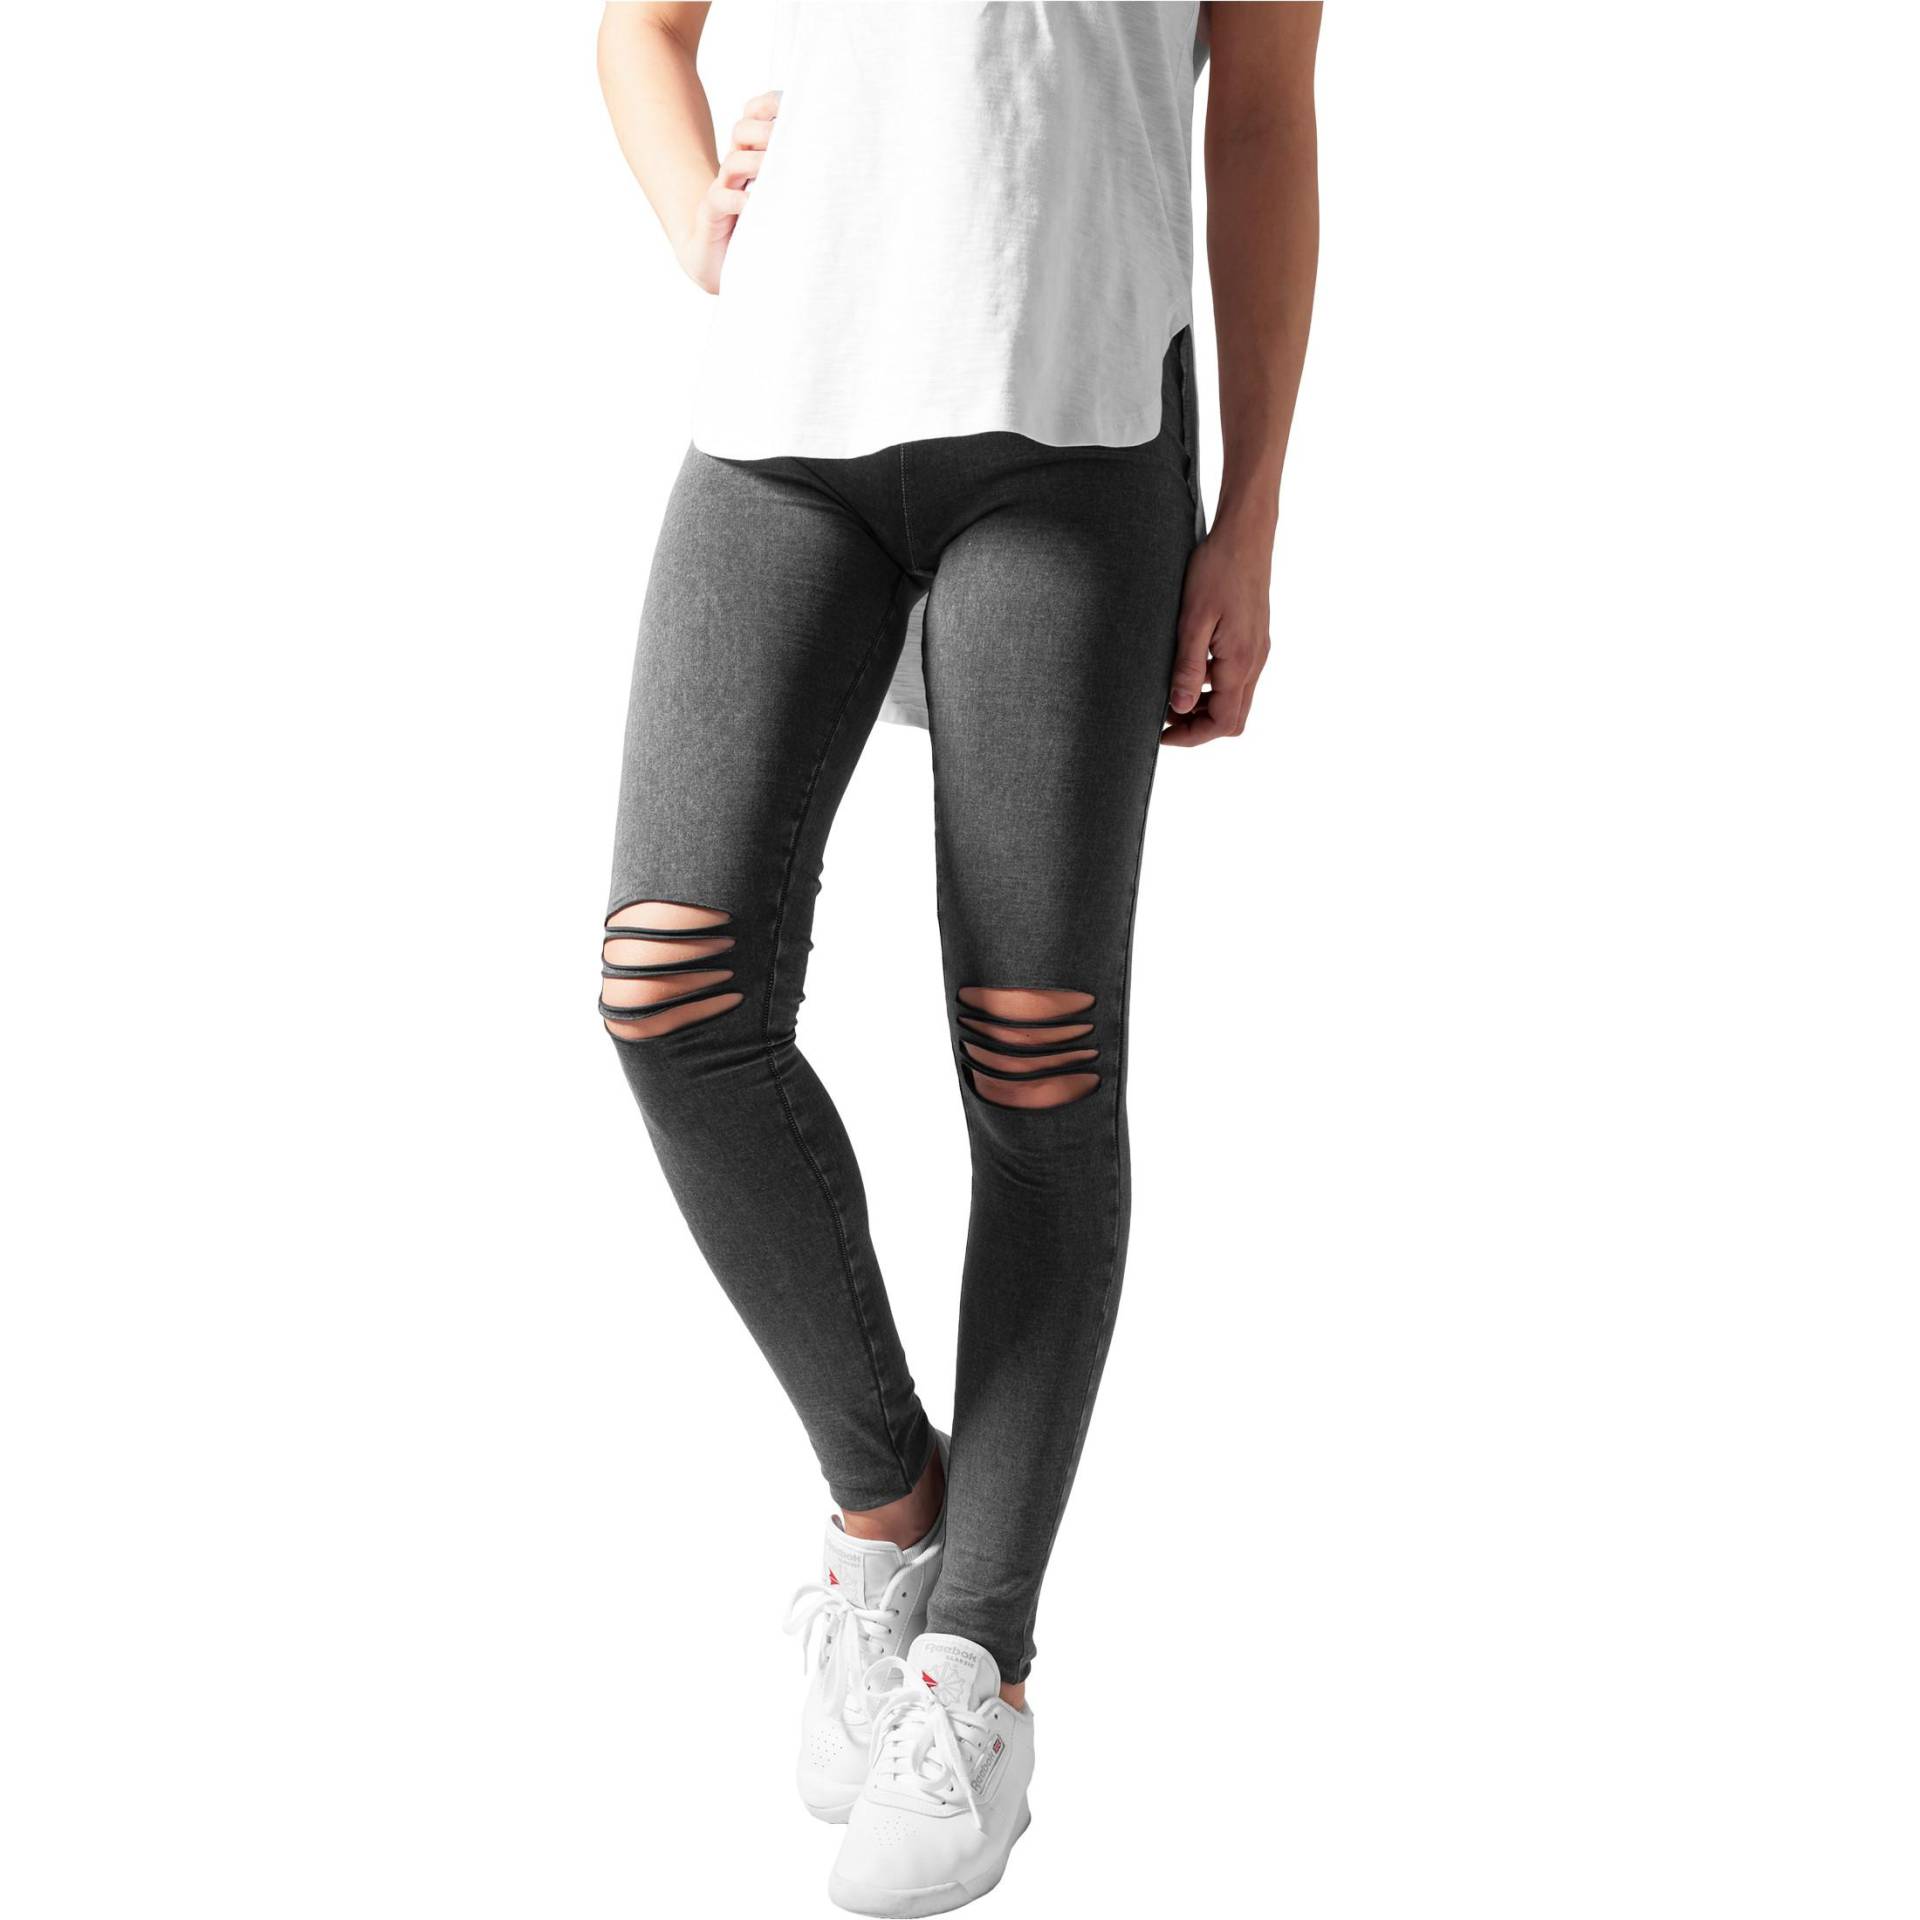 Urban Claic Abgechnittene Knie-legging Für Frauen Unisex  S von URBAN CLASSICS